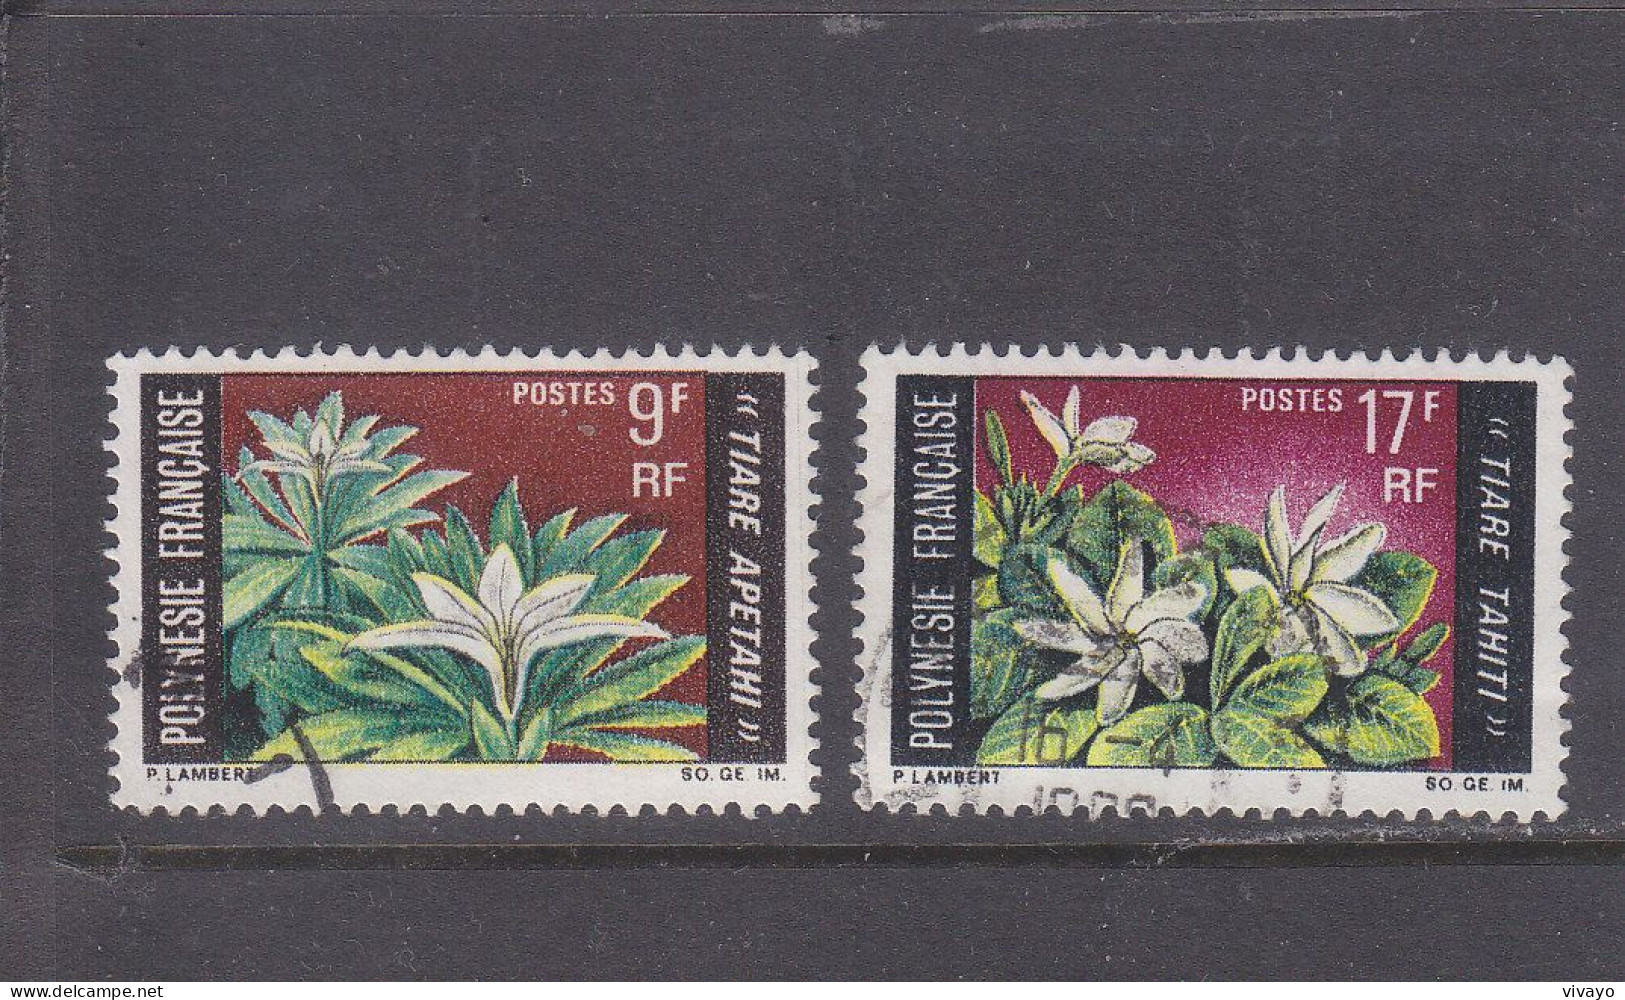 FRENCH POLYNESIA - POLYNESIE FRAN. - O / FINE CANCELLED - 1969 - LOCAL FLOWERS - Yv. 64/65  - Mi. 90/91 - Usati